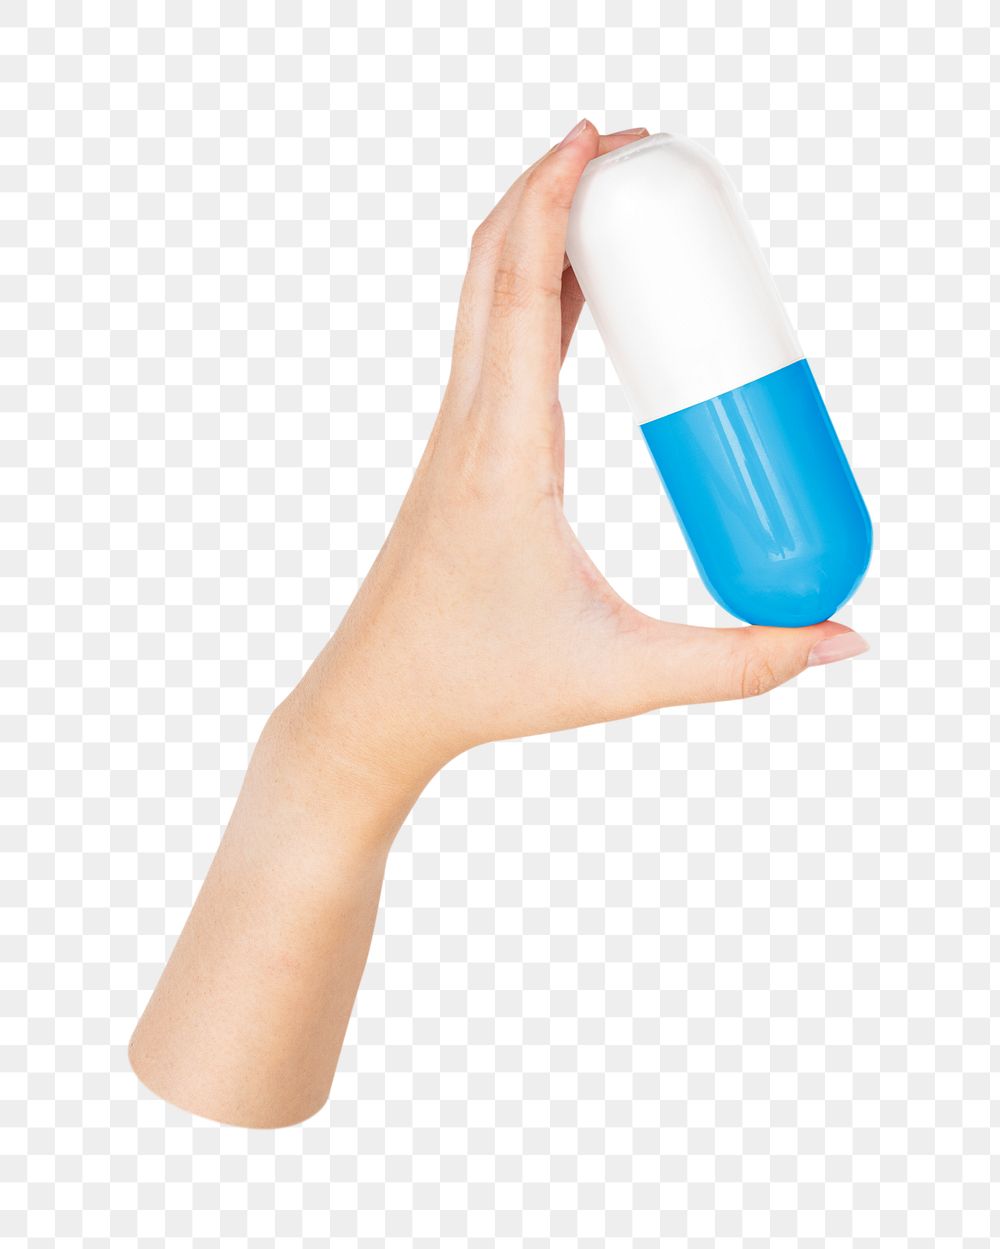 Png hand holding medicine, transparent background